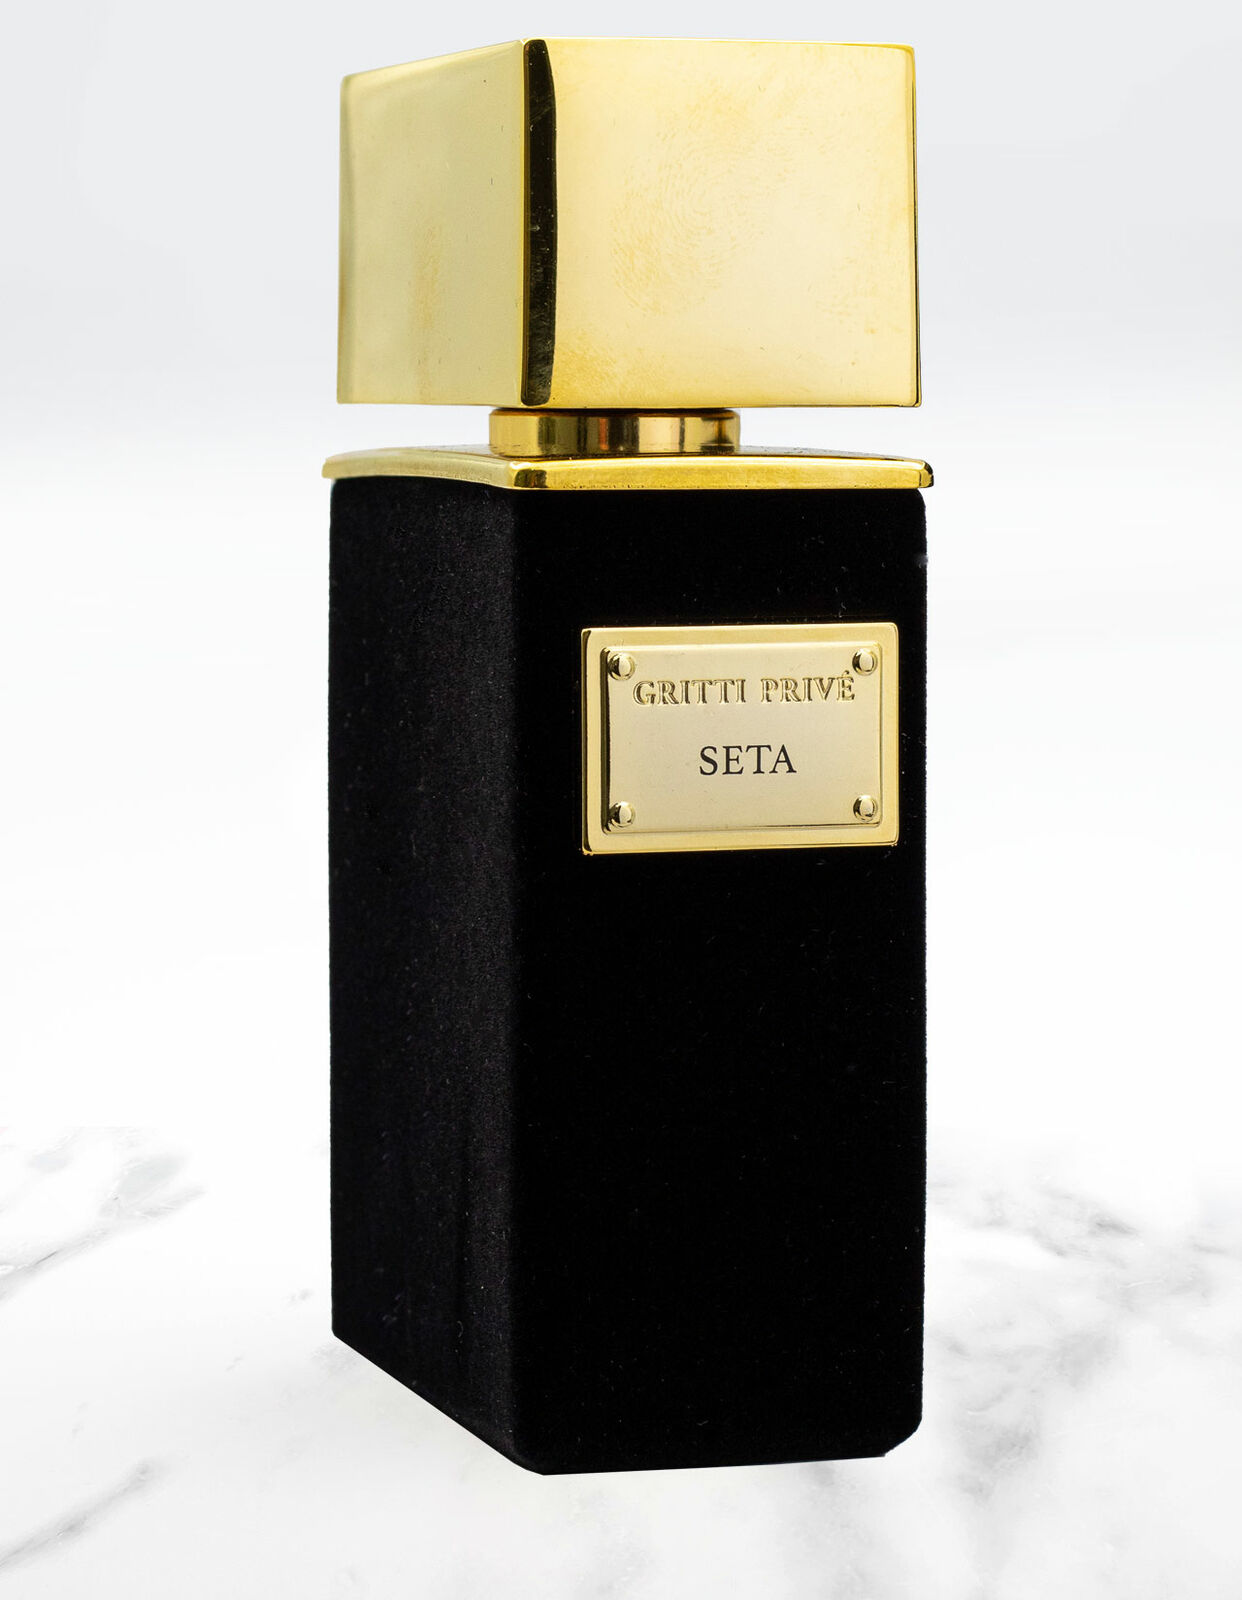 Gritti Seta extrait de parfum  20 ml NIŠINIAI kvepalų mėginukas (atomaizeris) Unisex Parfum